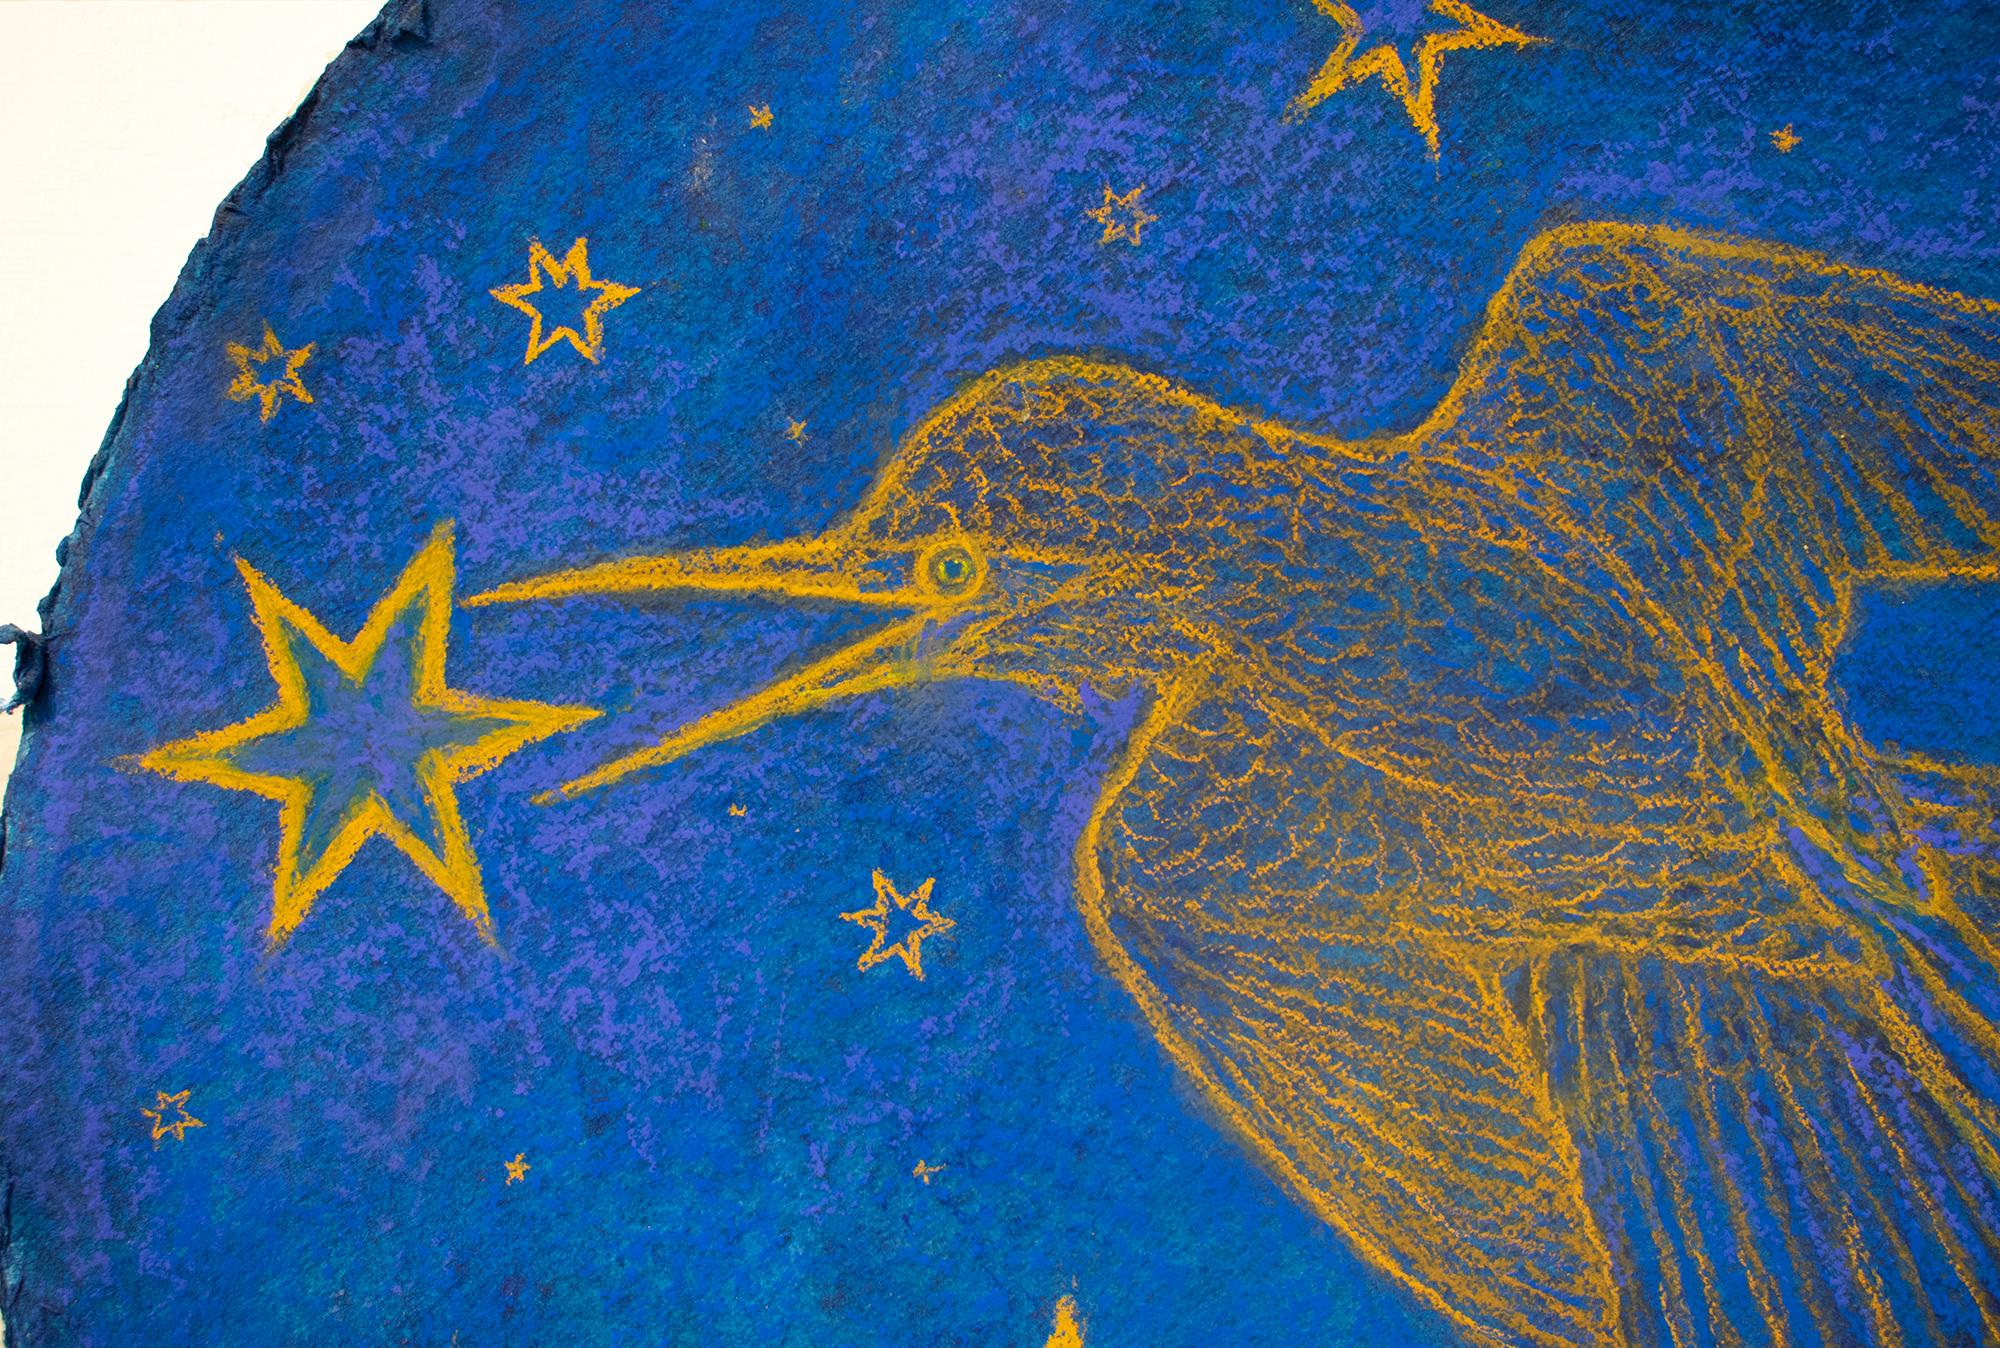 Hummingbird Augury: Kobaltblaue pastellfarbene Zeichnung auf handgeschöpftem Papier mit goldenen Sternen – Painting von Nicholas Kahn & Richard Selesnick